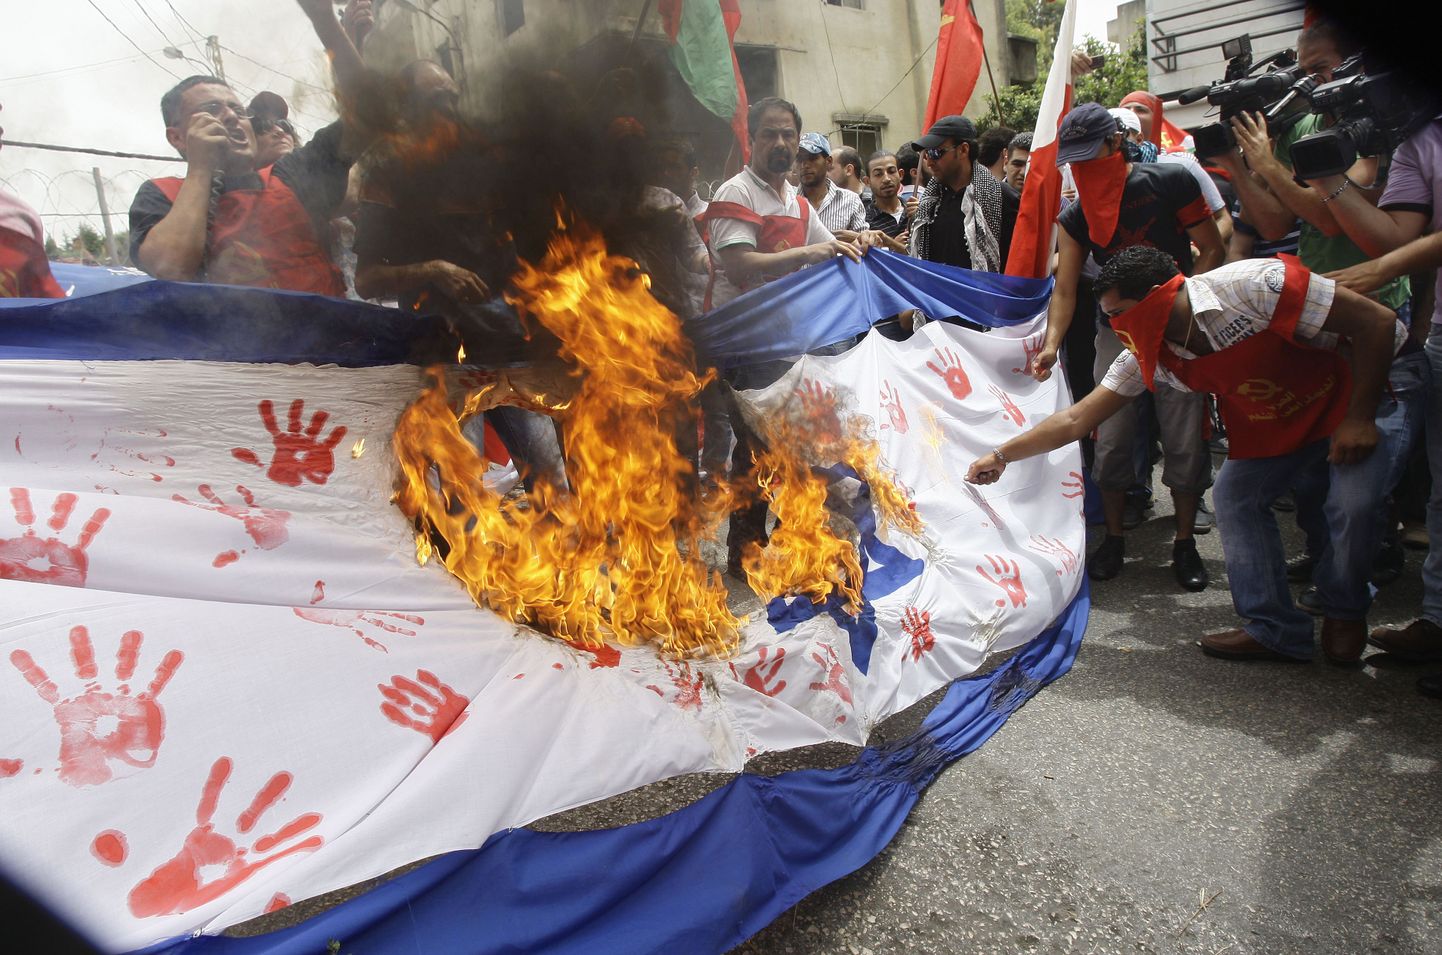 Vihased inimesed põletavad Iisraeli lipu koopiat USA saatkonna lähistel Liibanonis Beirutis.